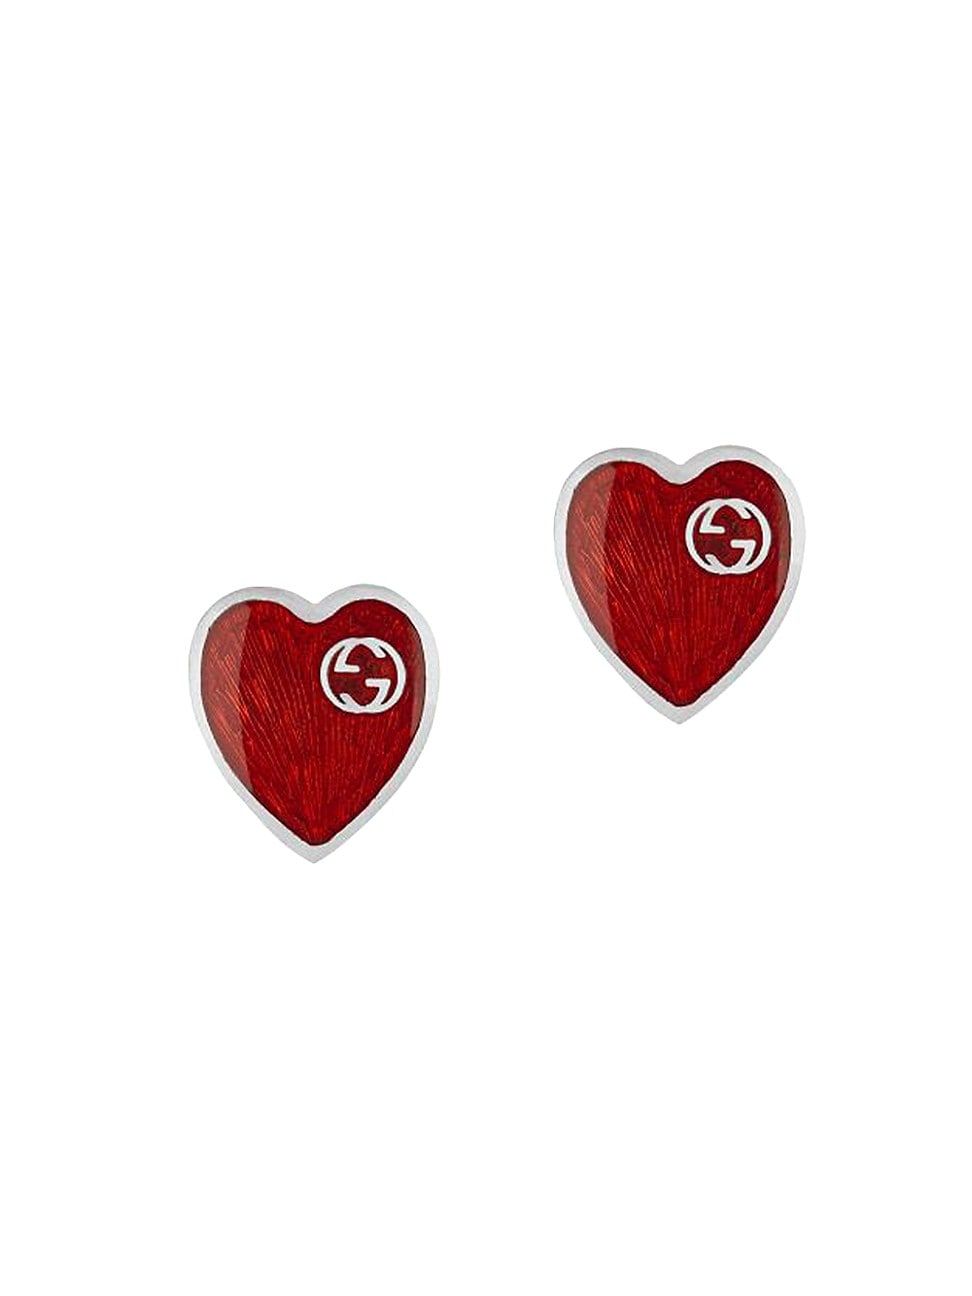 GG Hearts Sterling Silver & Red Enamel Stud Earrings | Saks Fifth Avenue